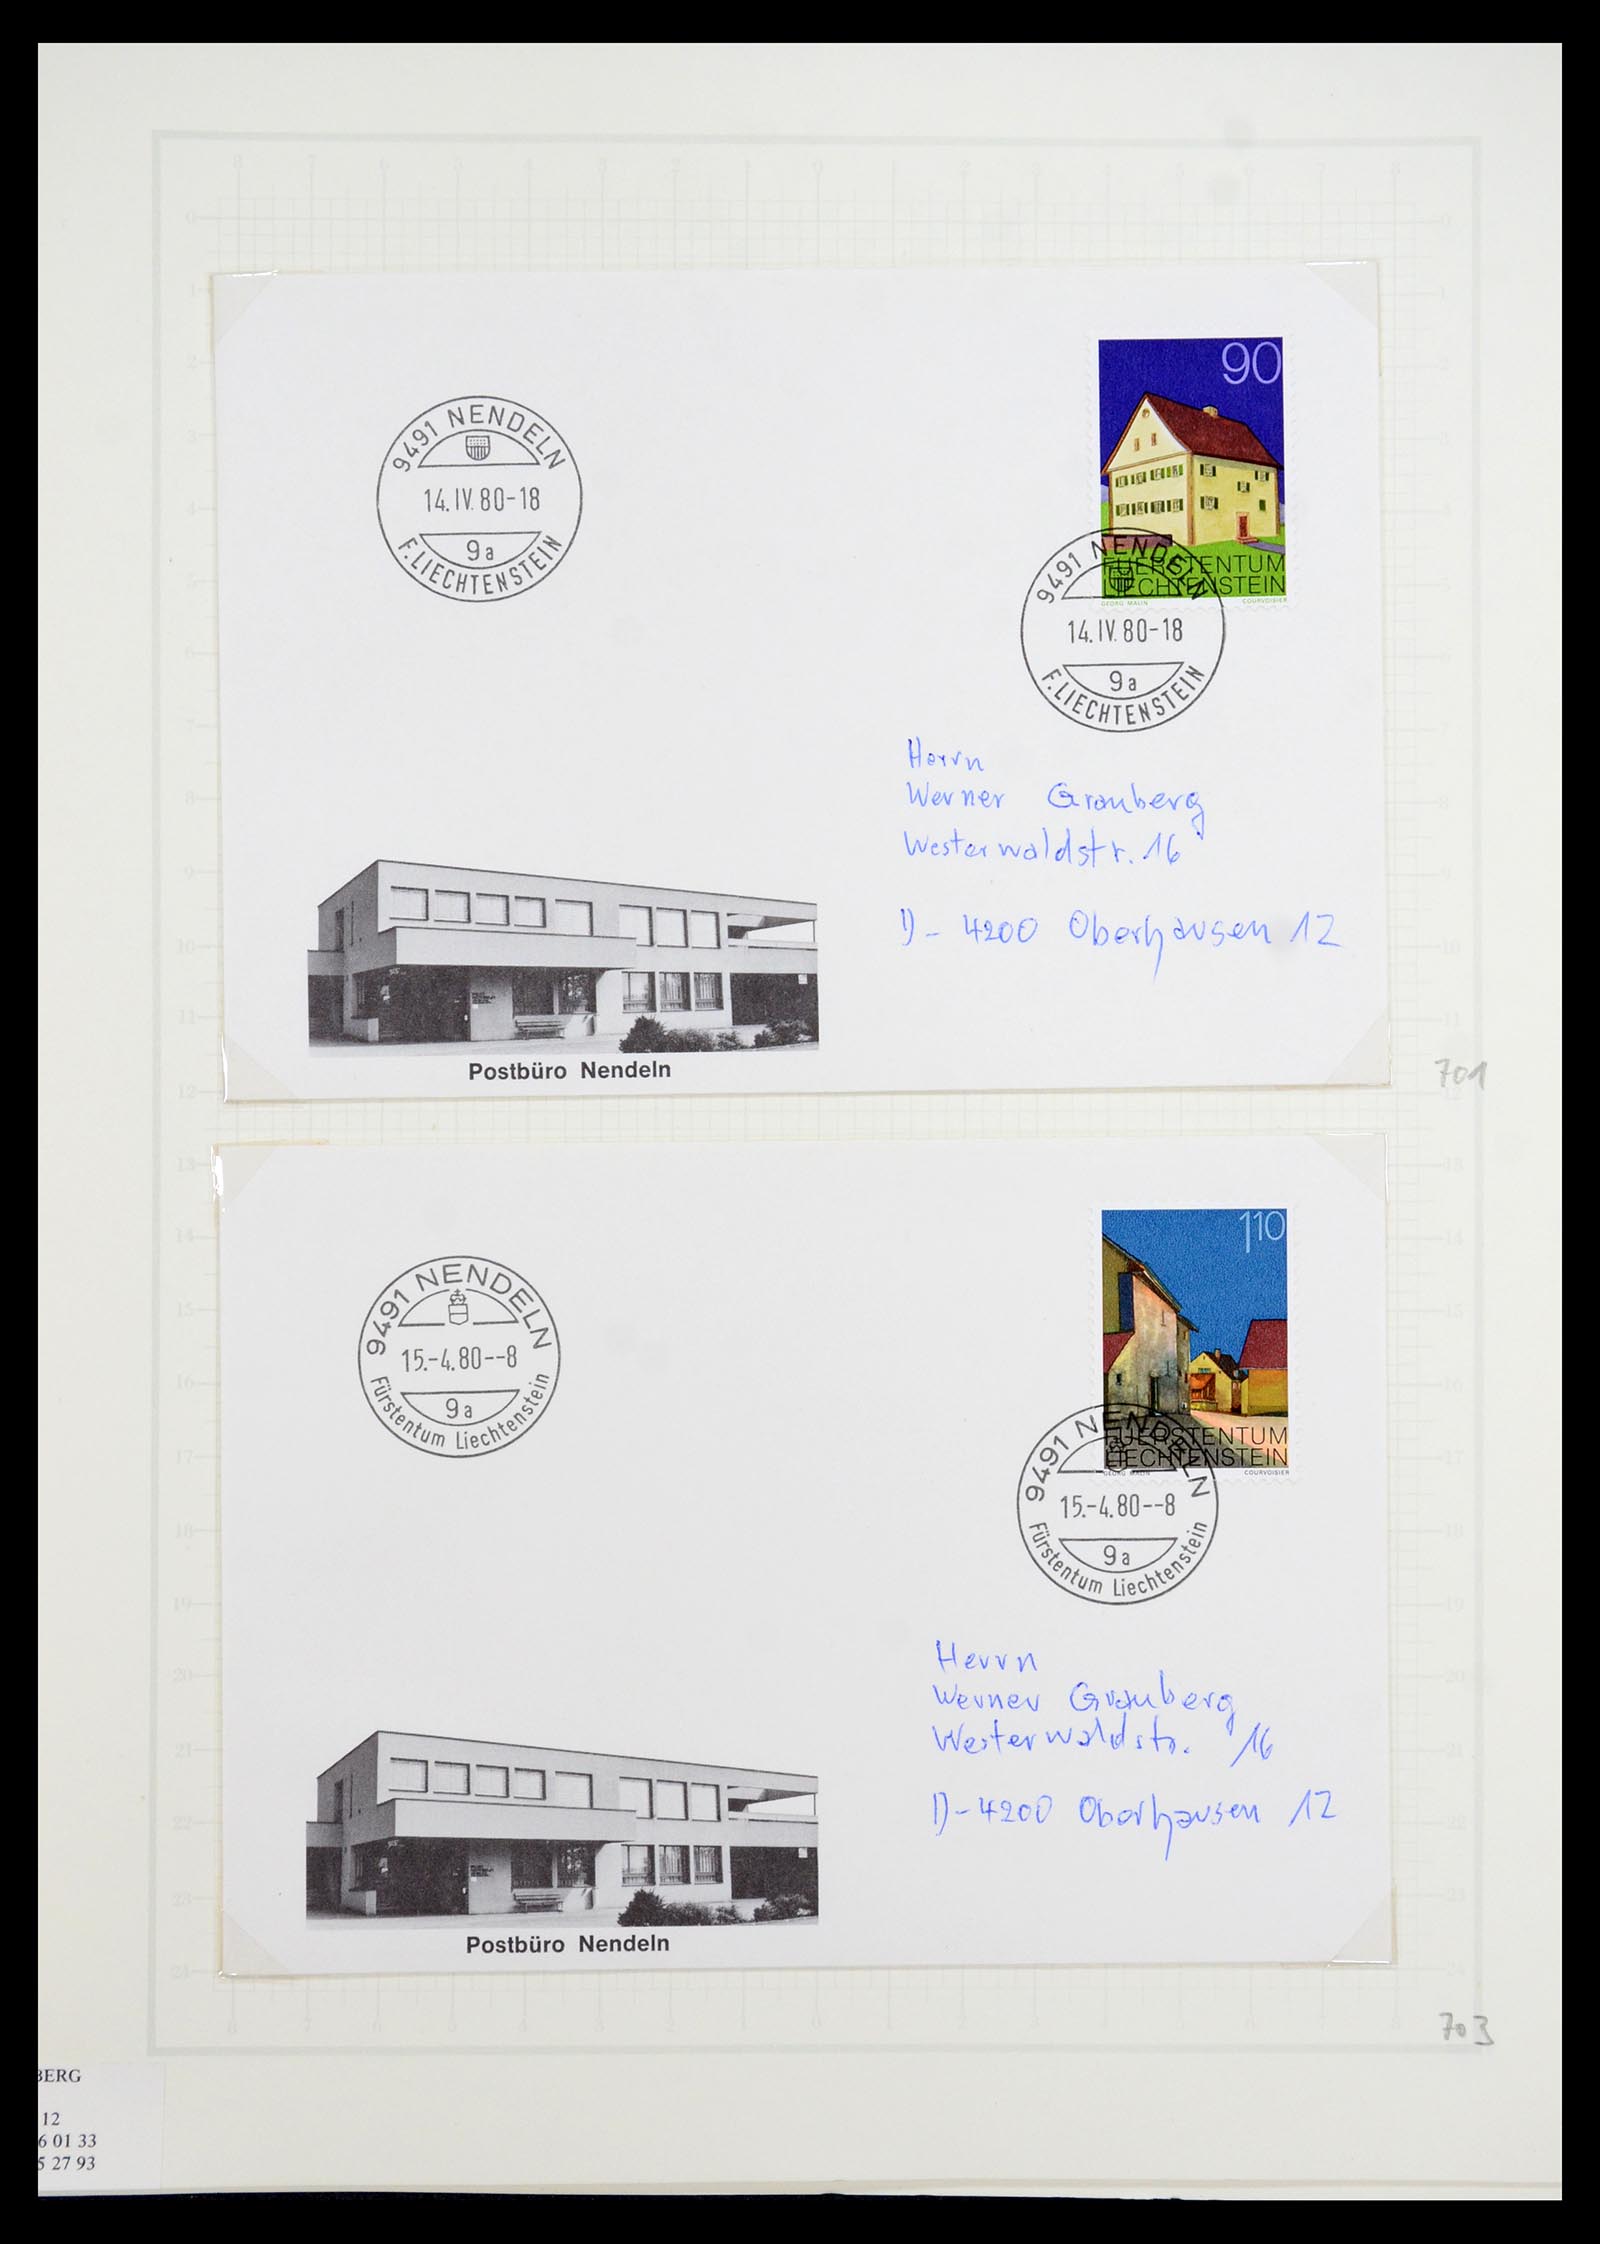 35586 100 - Stamp Collection 35586 Liechtenstein 1912-2021!